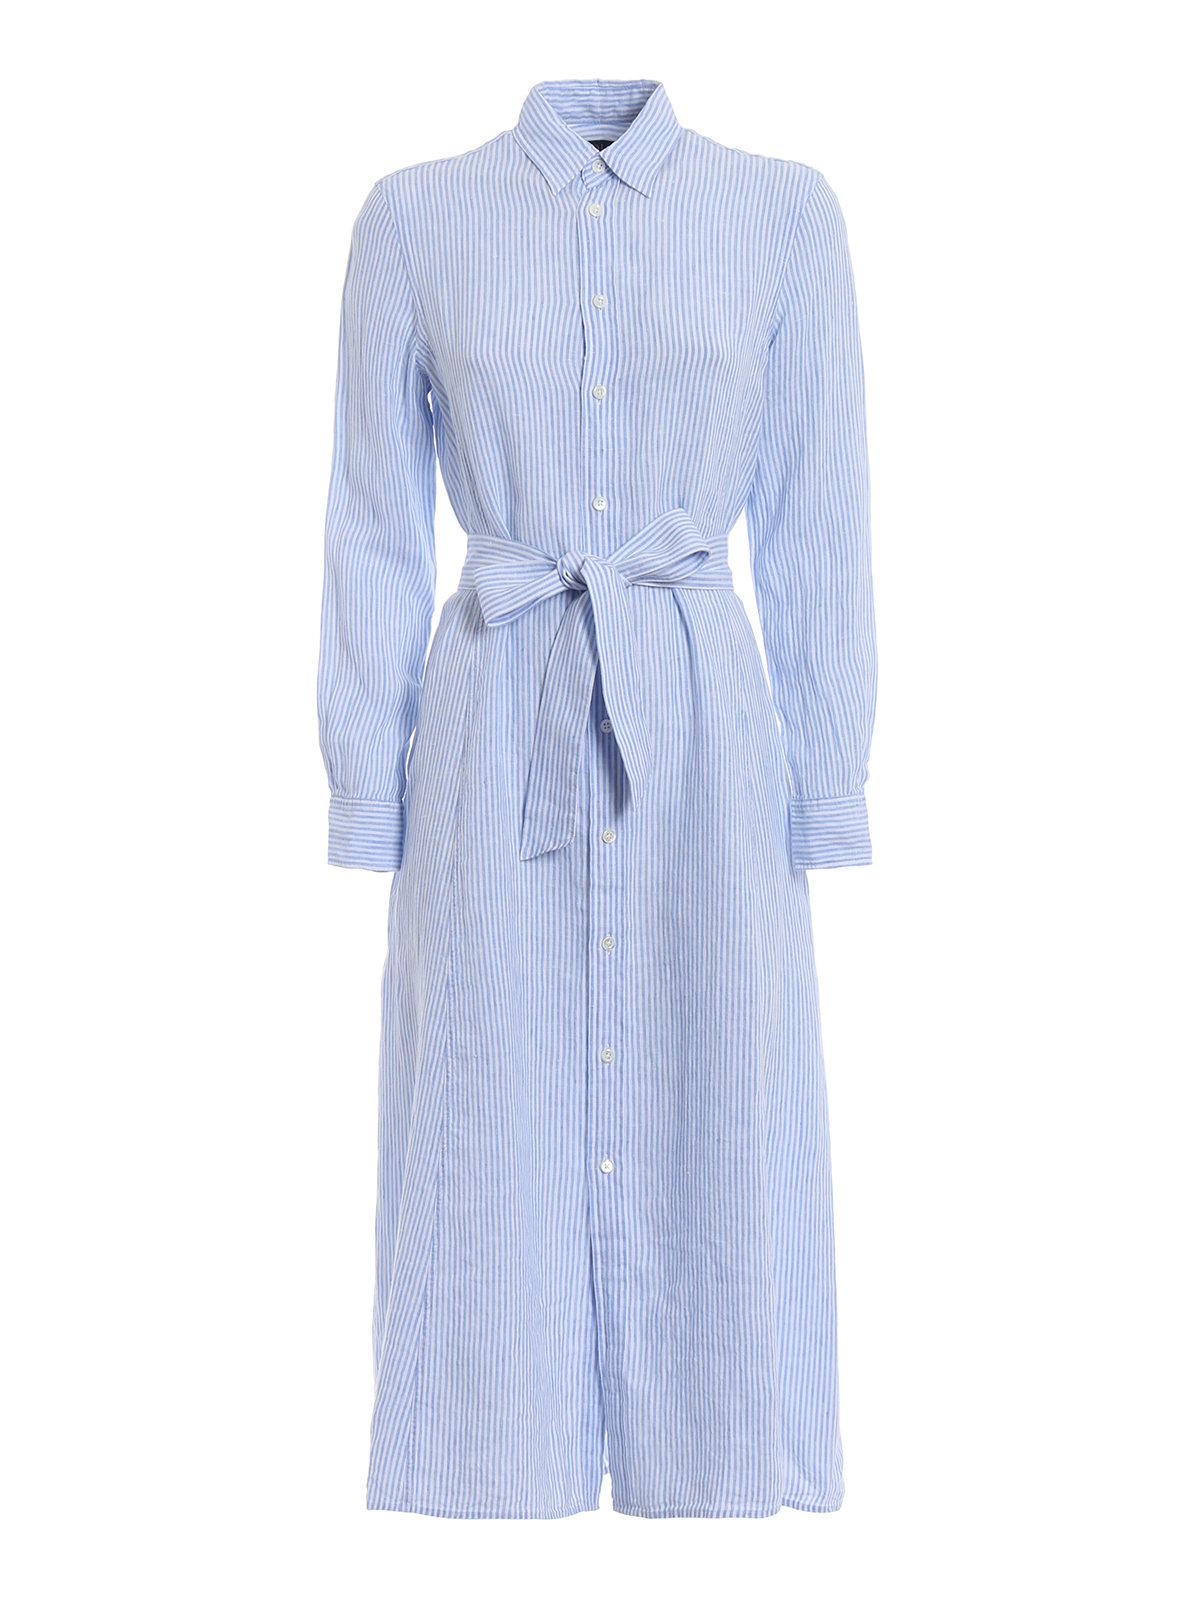 Introducir 89+ imagen polo ralph lauren linen dress - Thcshoanghoatham ...